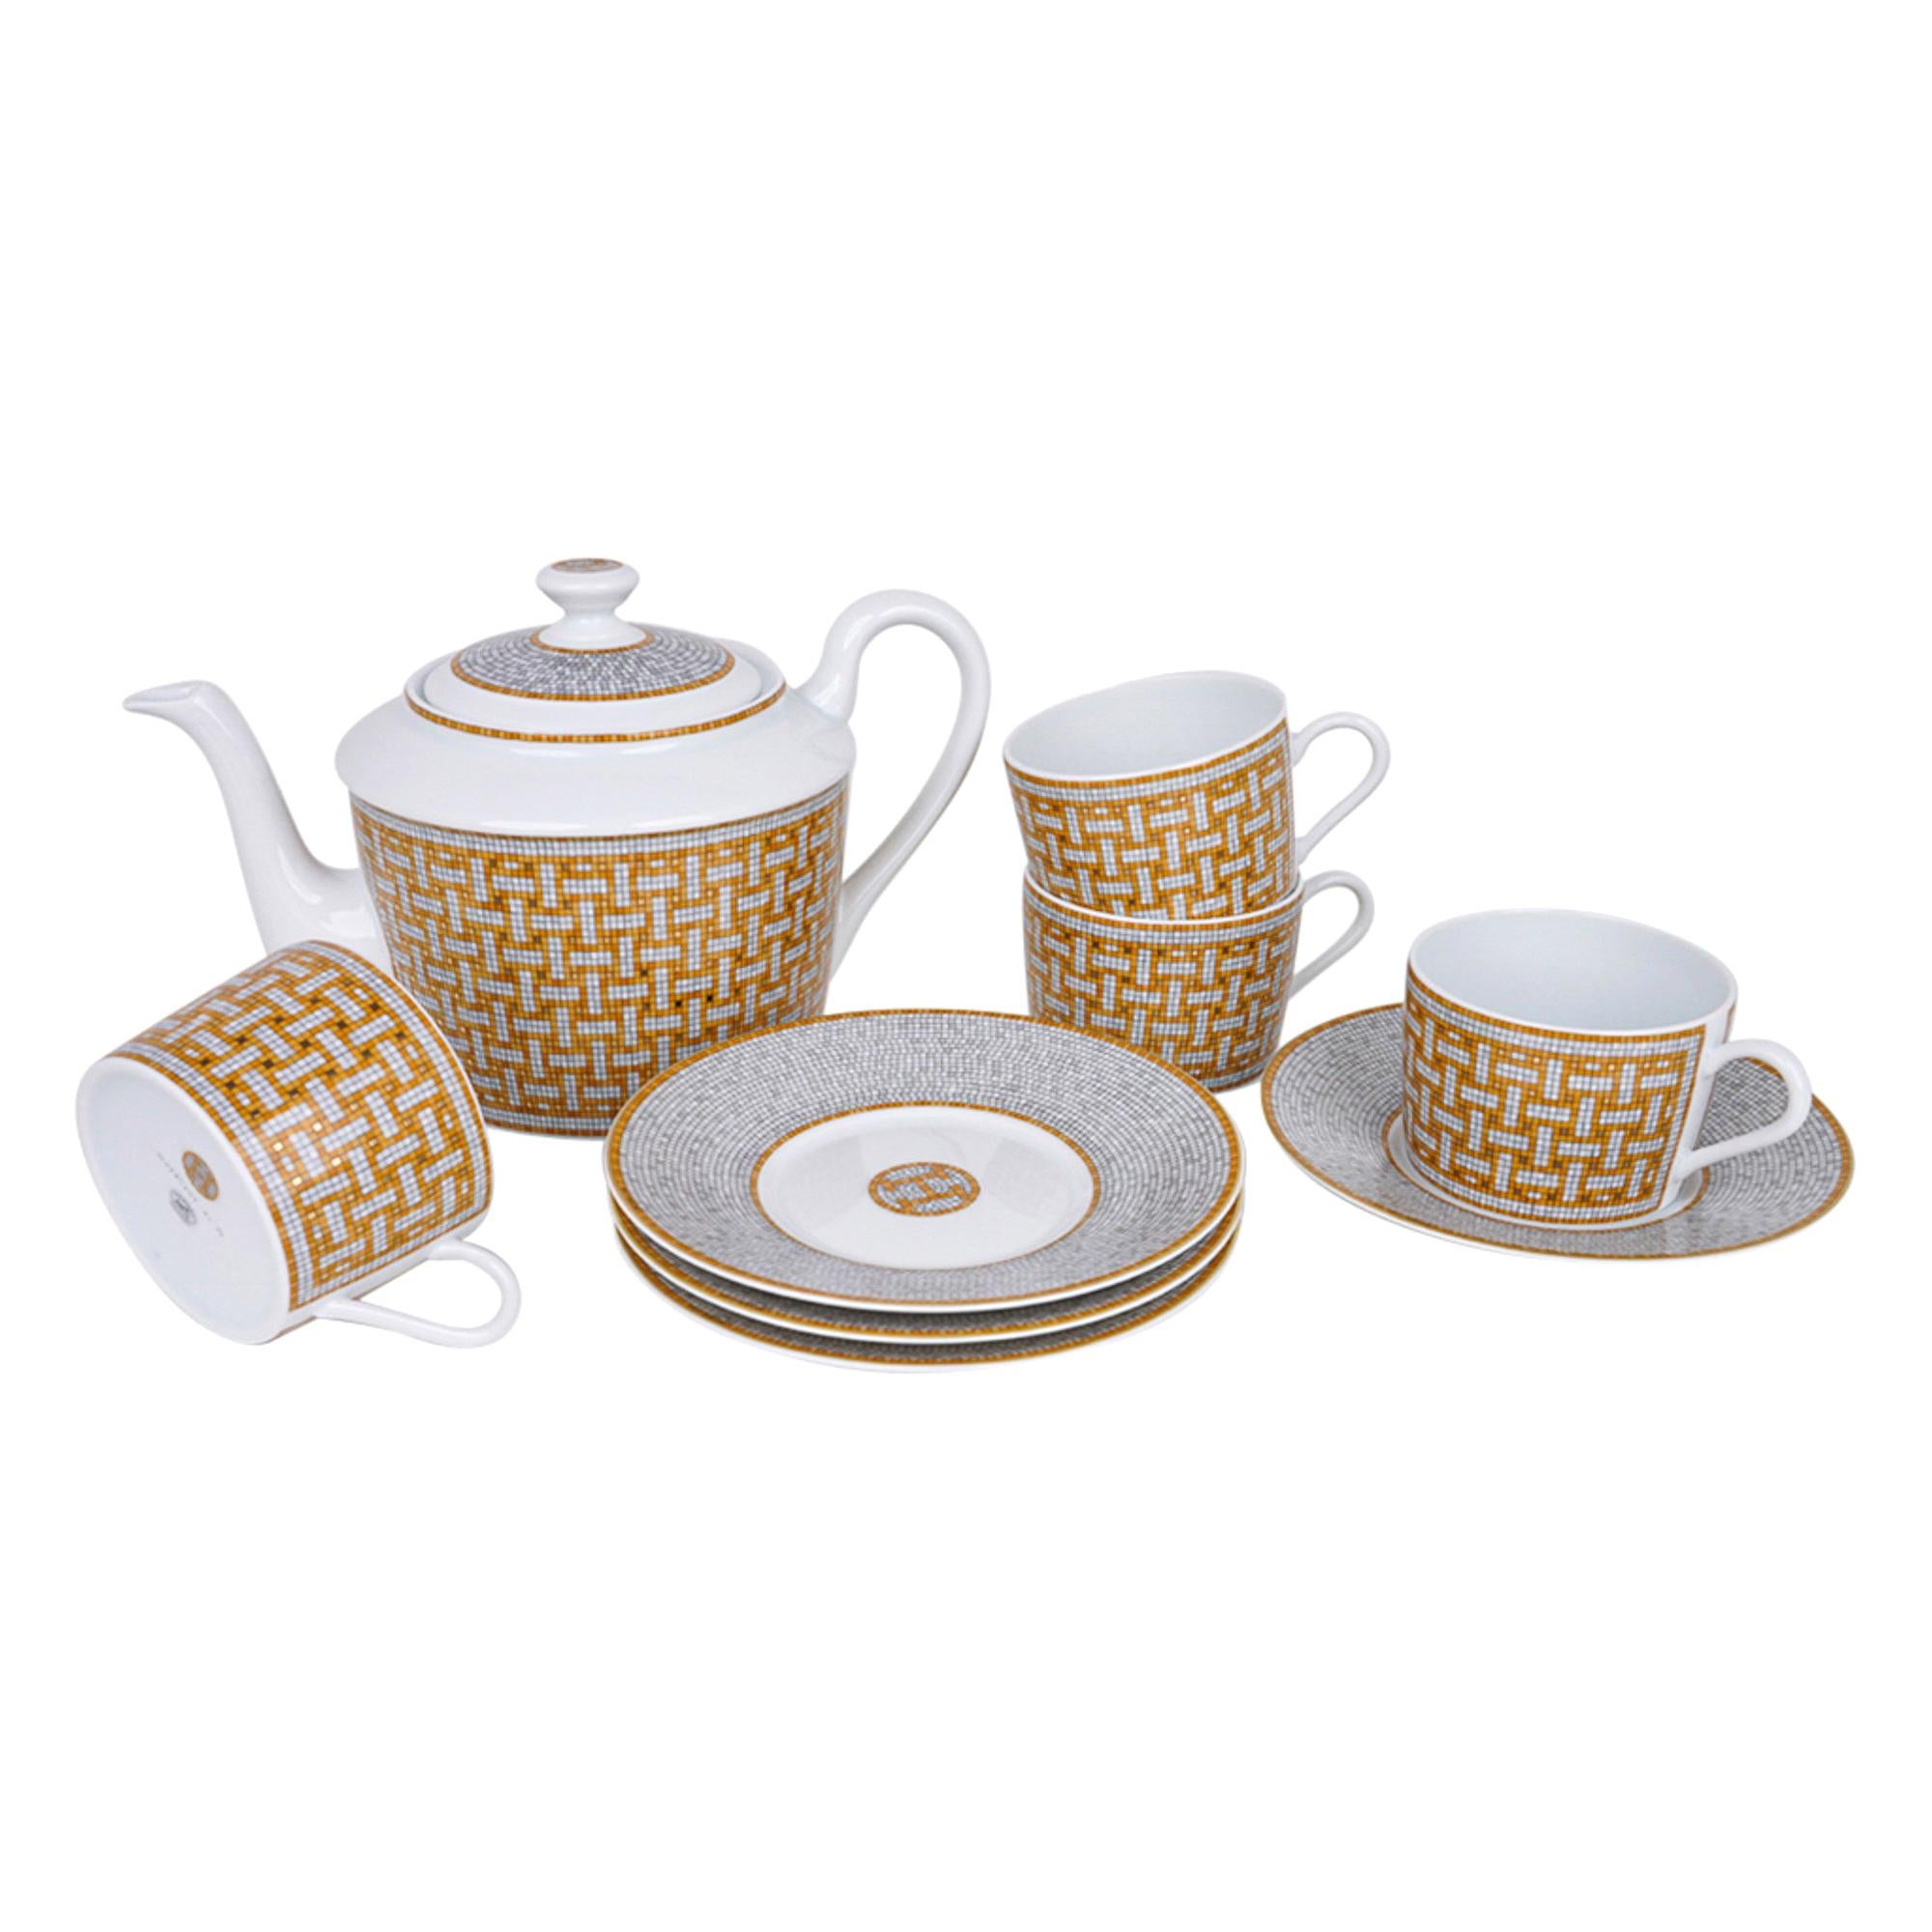 Hermes Teapot - 3 For Sale on 1stDibs | hermes teapot set, set 